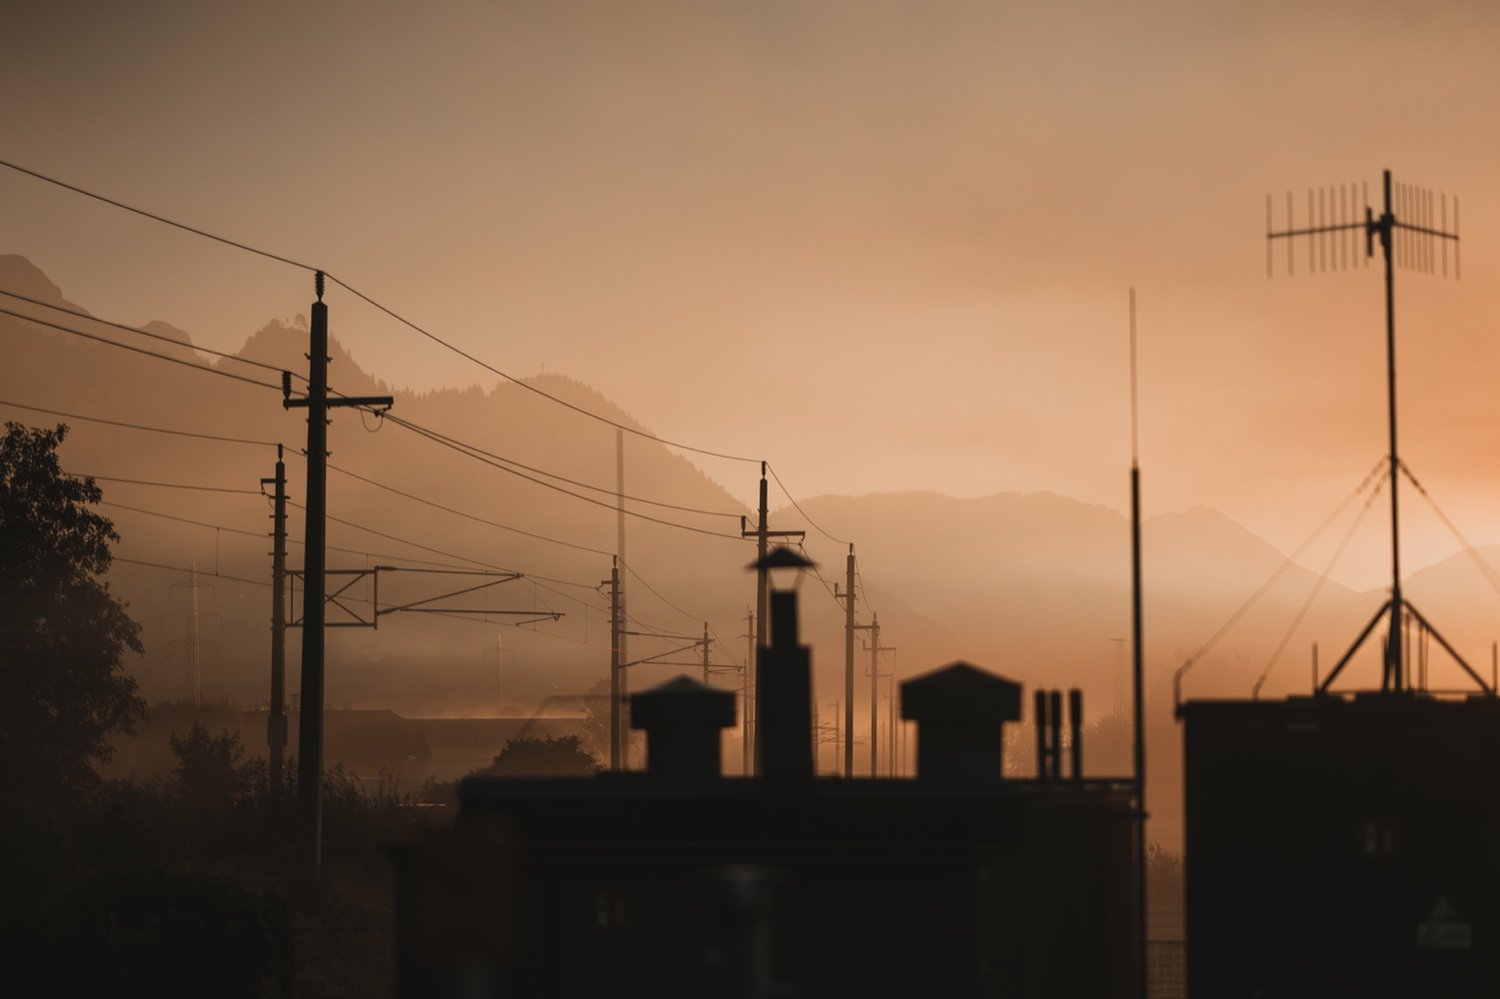 a7iv-sunrise-fog-photography_21.jpg